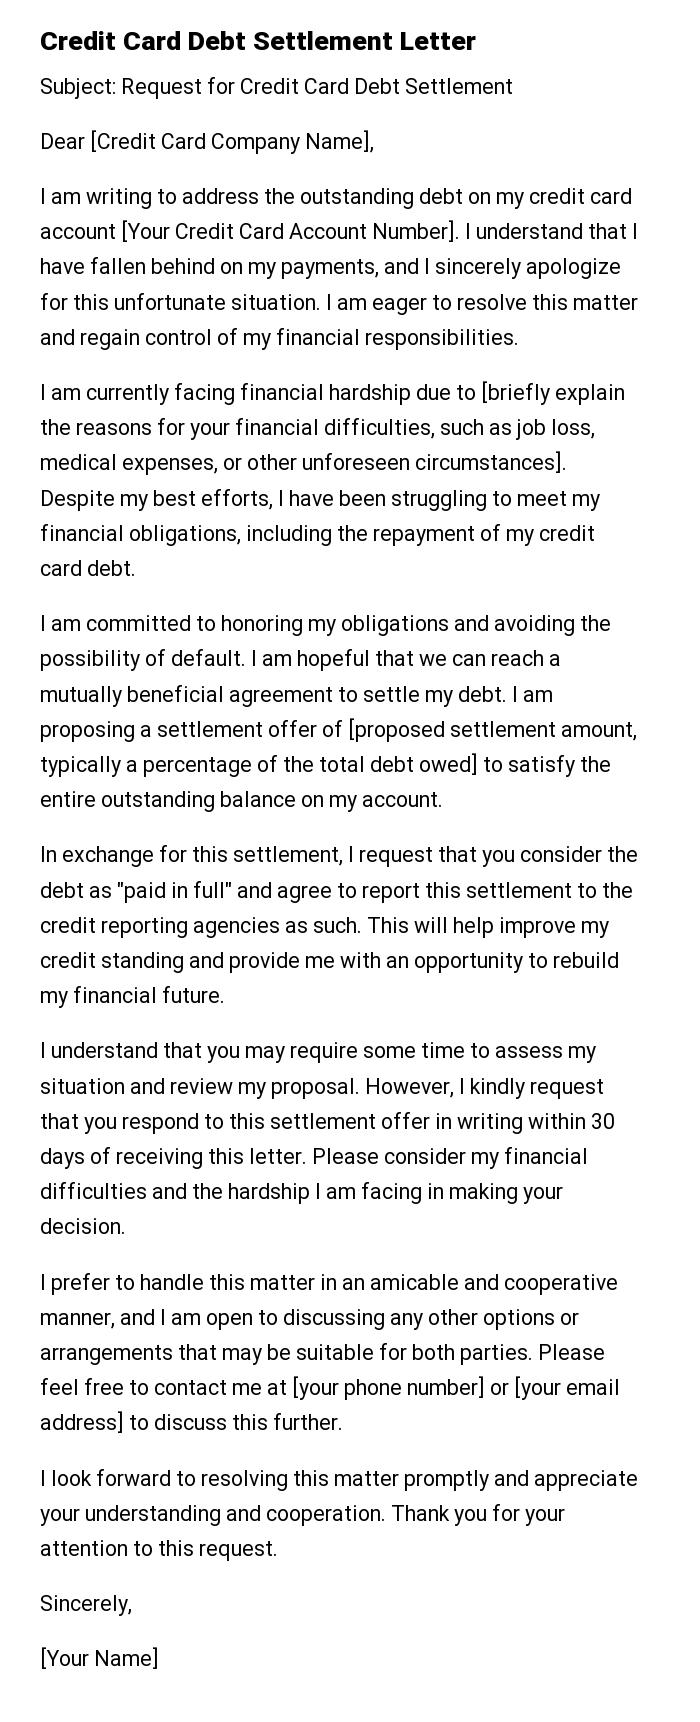 Credit Card Debt Settlement Letter